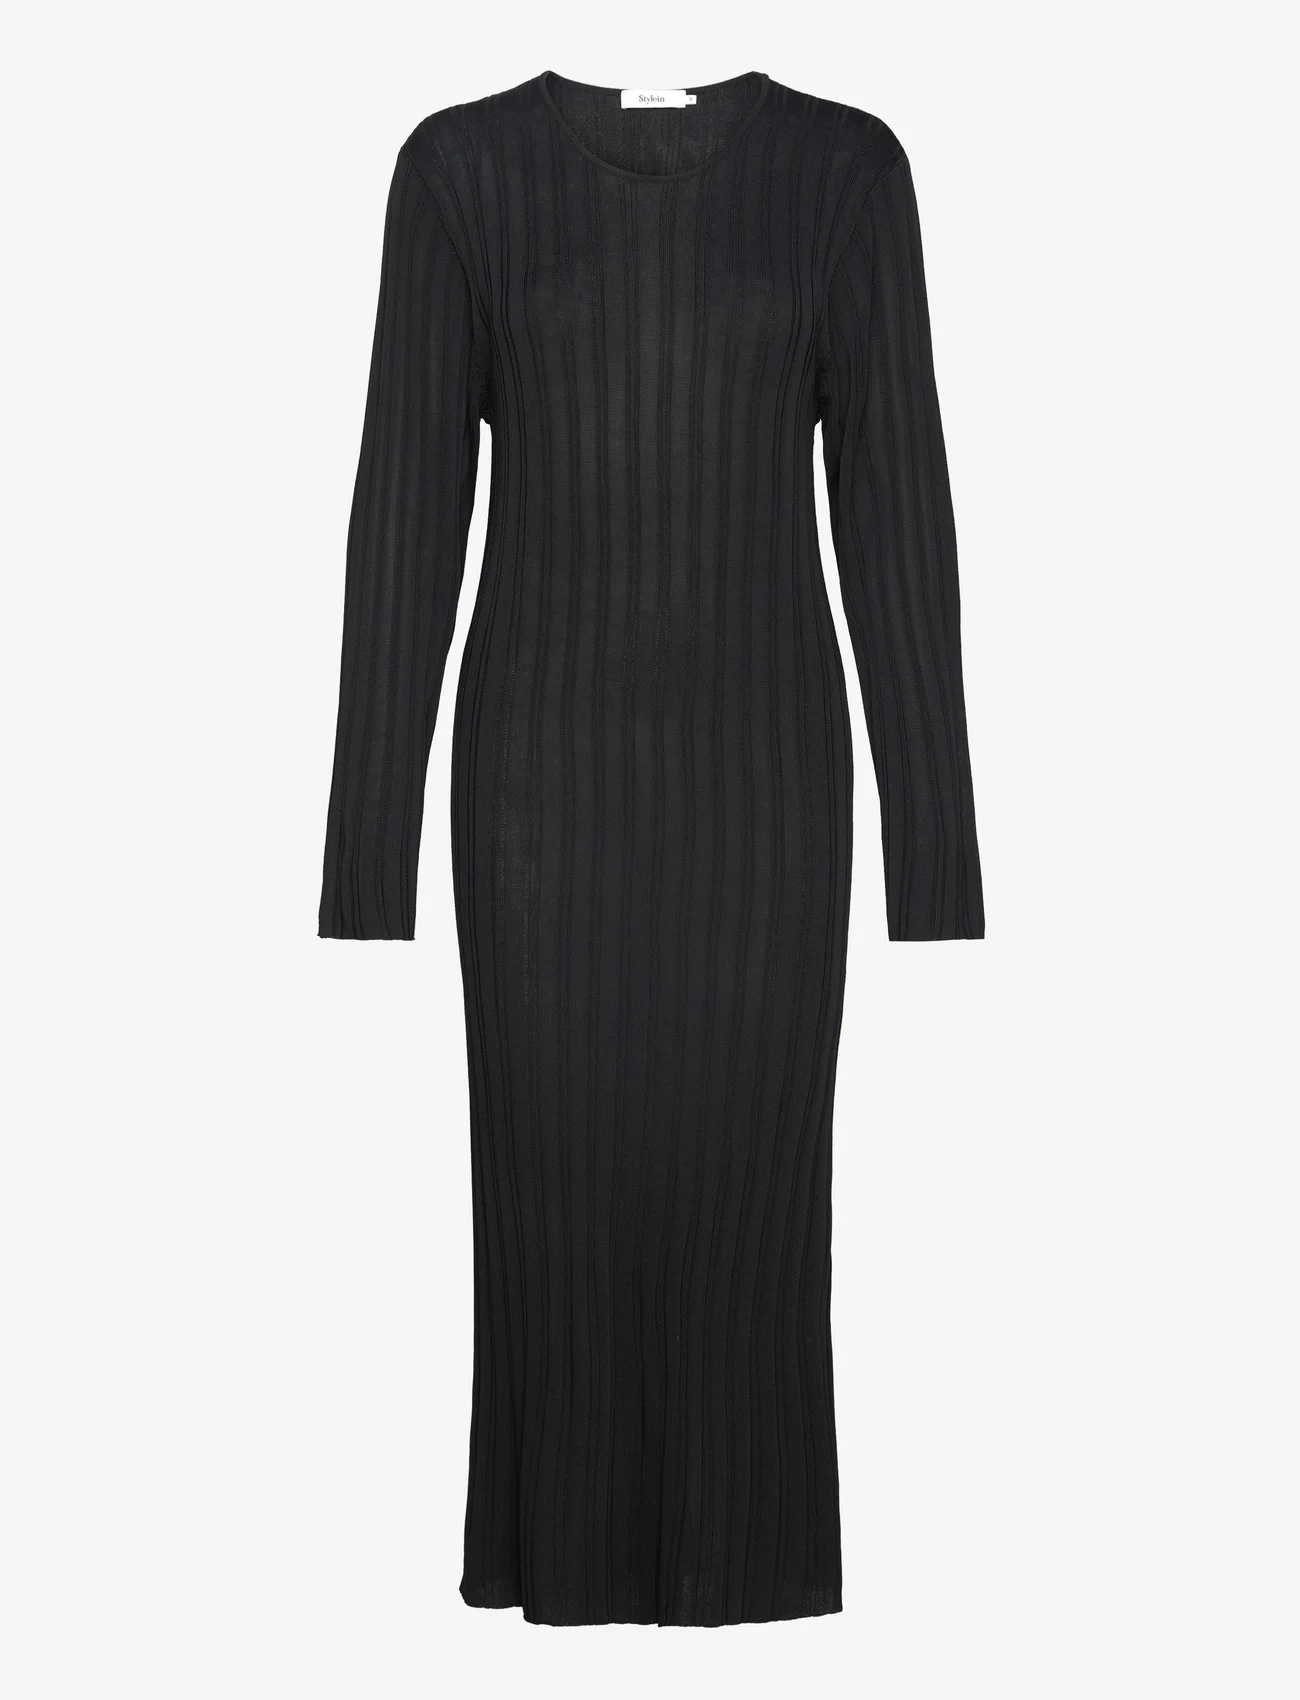 Stylein - PANDORA DRESS - t-shirt jurken - black - 0